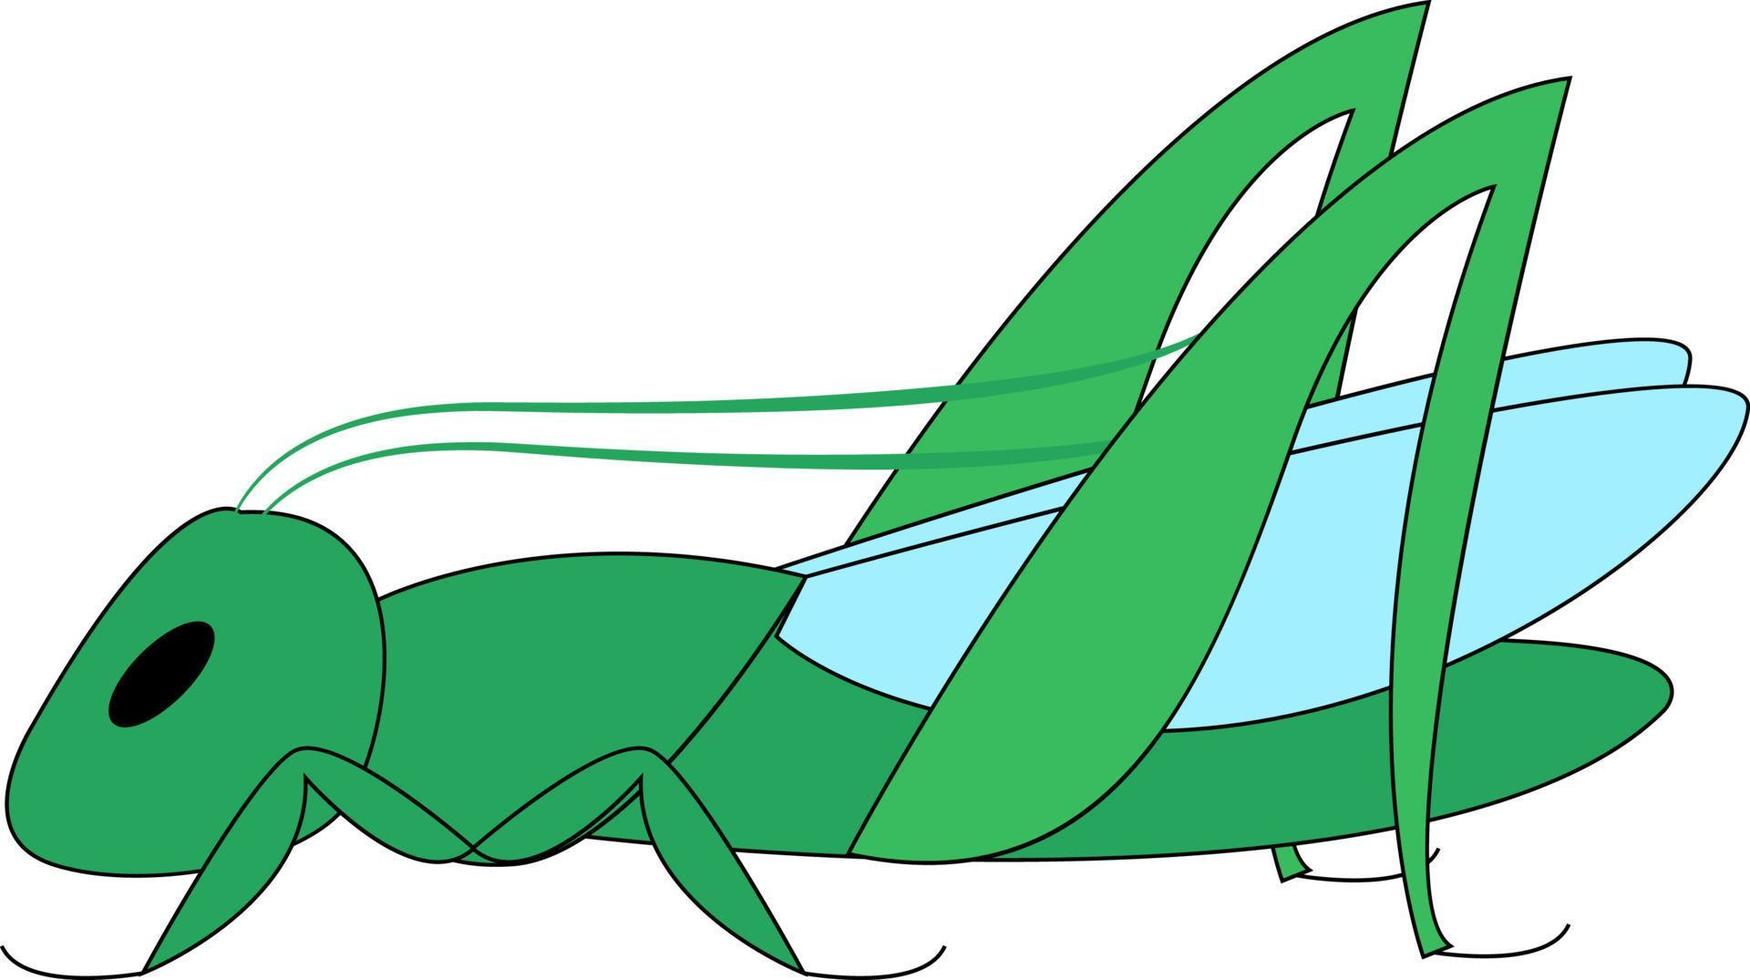 Green grasshopper, illustration, vector on white background.